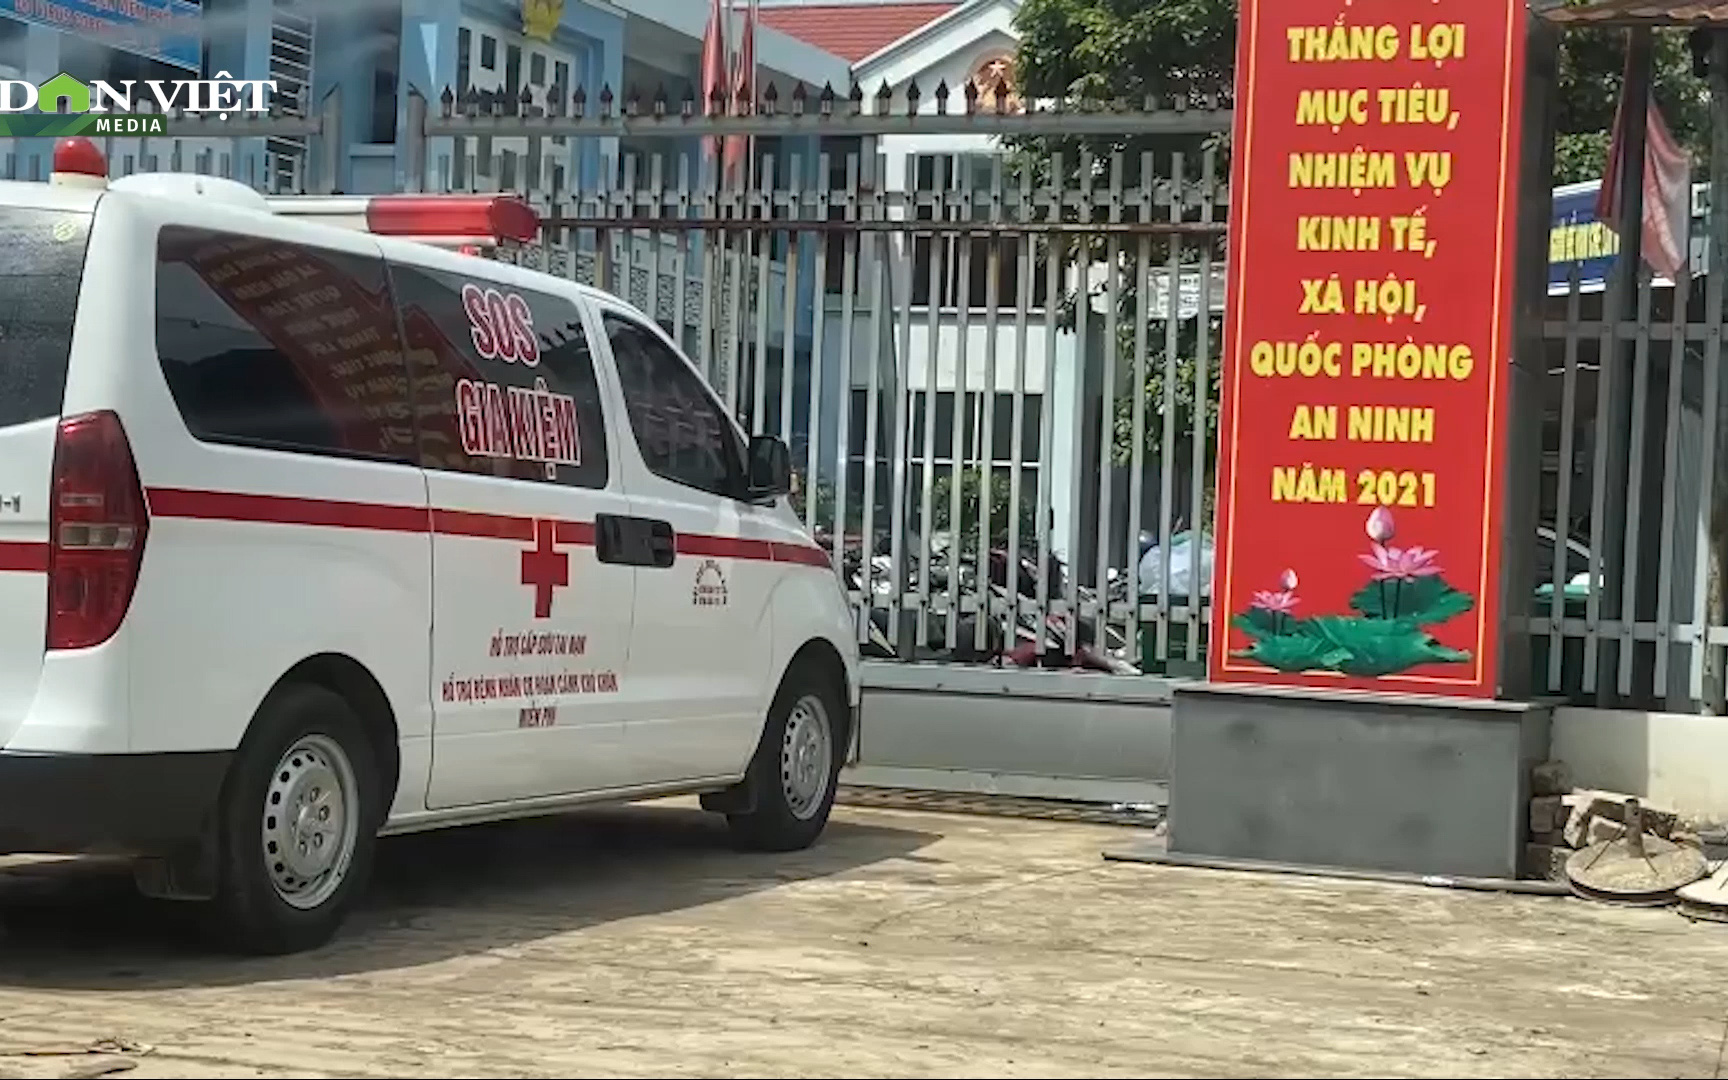 Một bệnh nhân Covid-19 tại Đồng Nai đã tử vong trên nền bệnh lý đột quỵ, huyết áp cao